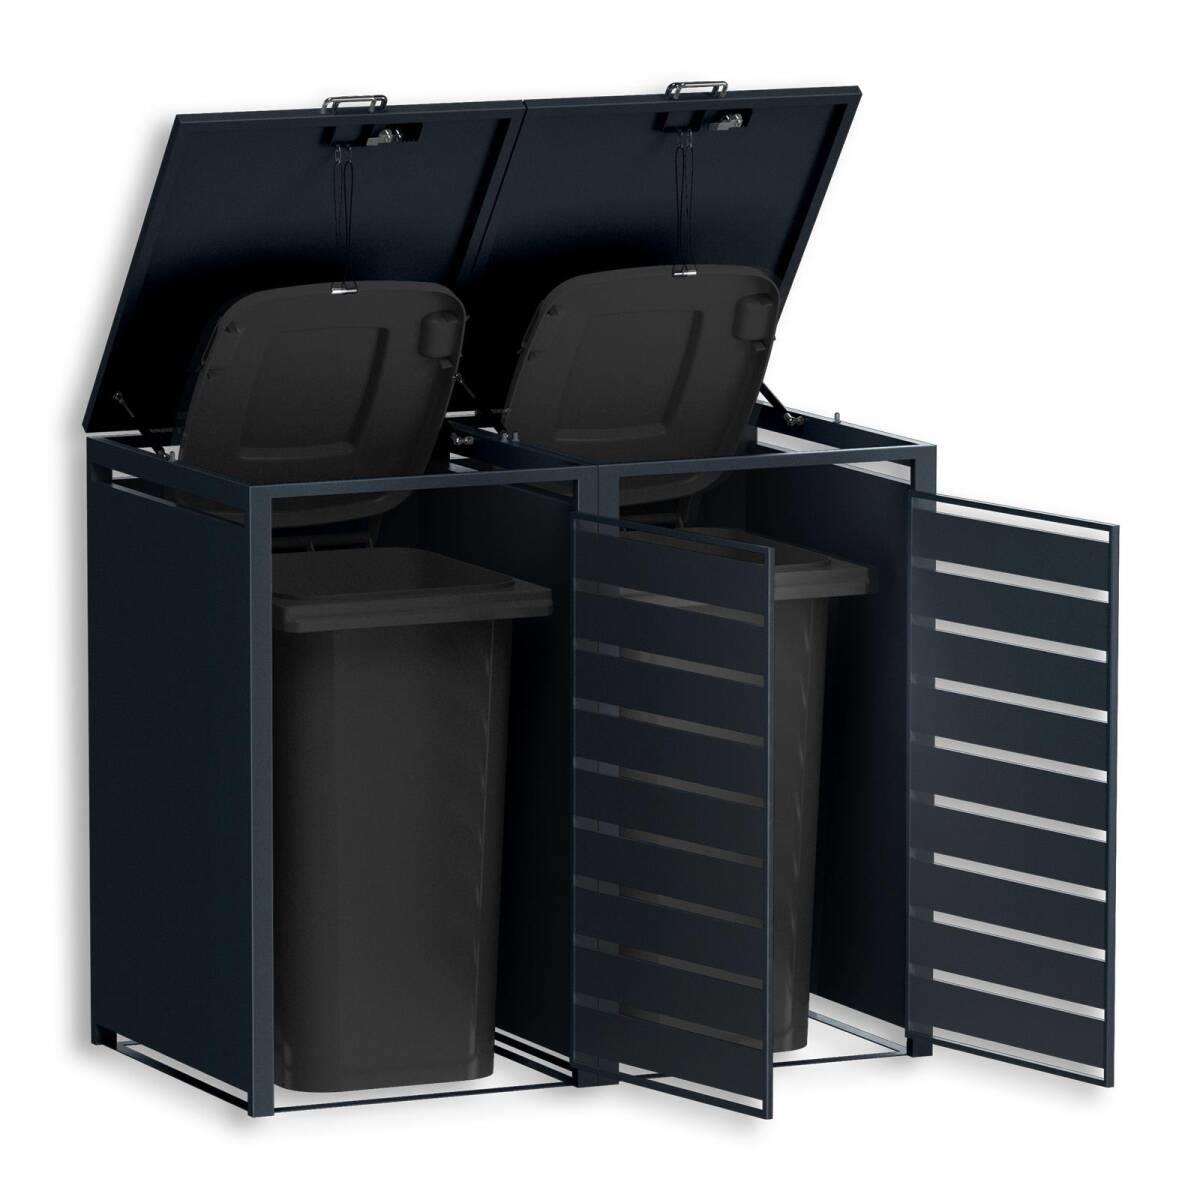 Abfallentsorgung: Mülltonnenbox mit Sichtstreifen, zweitürig